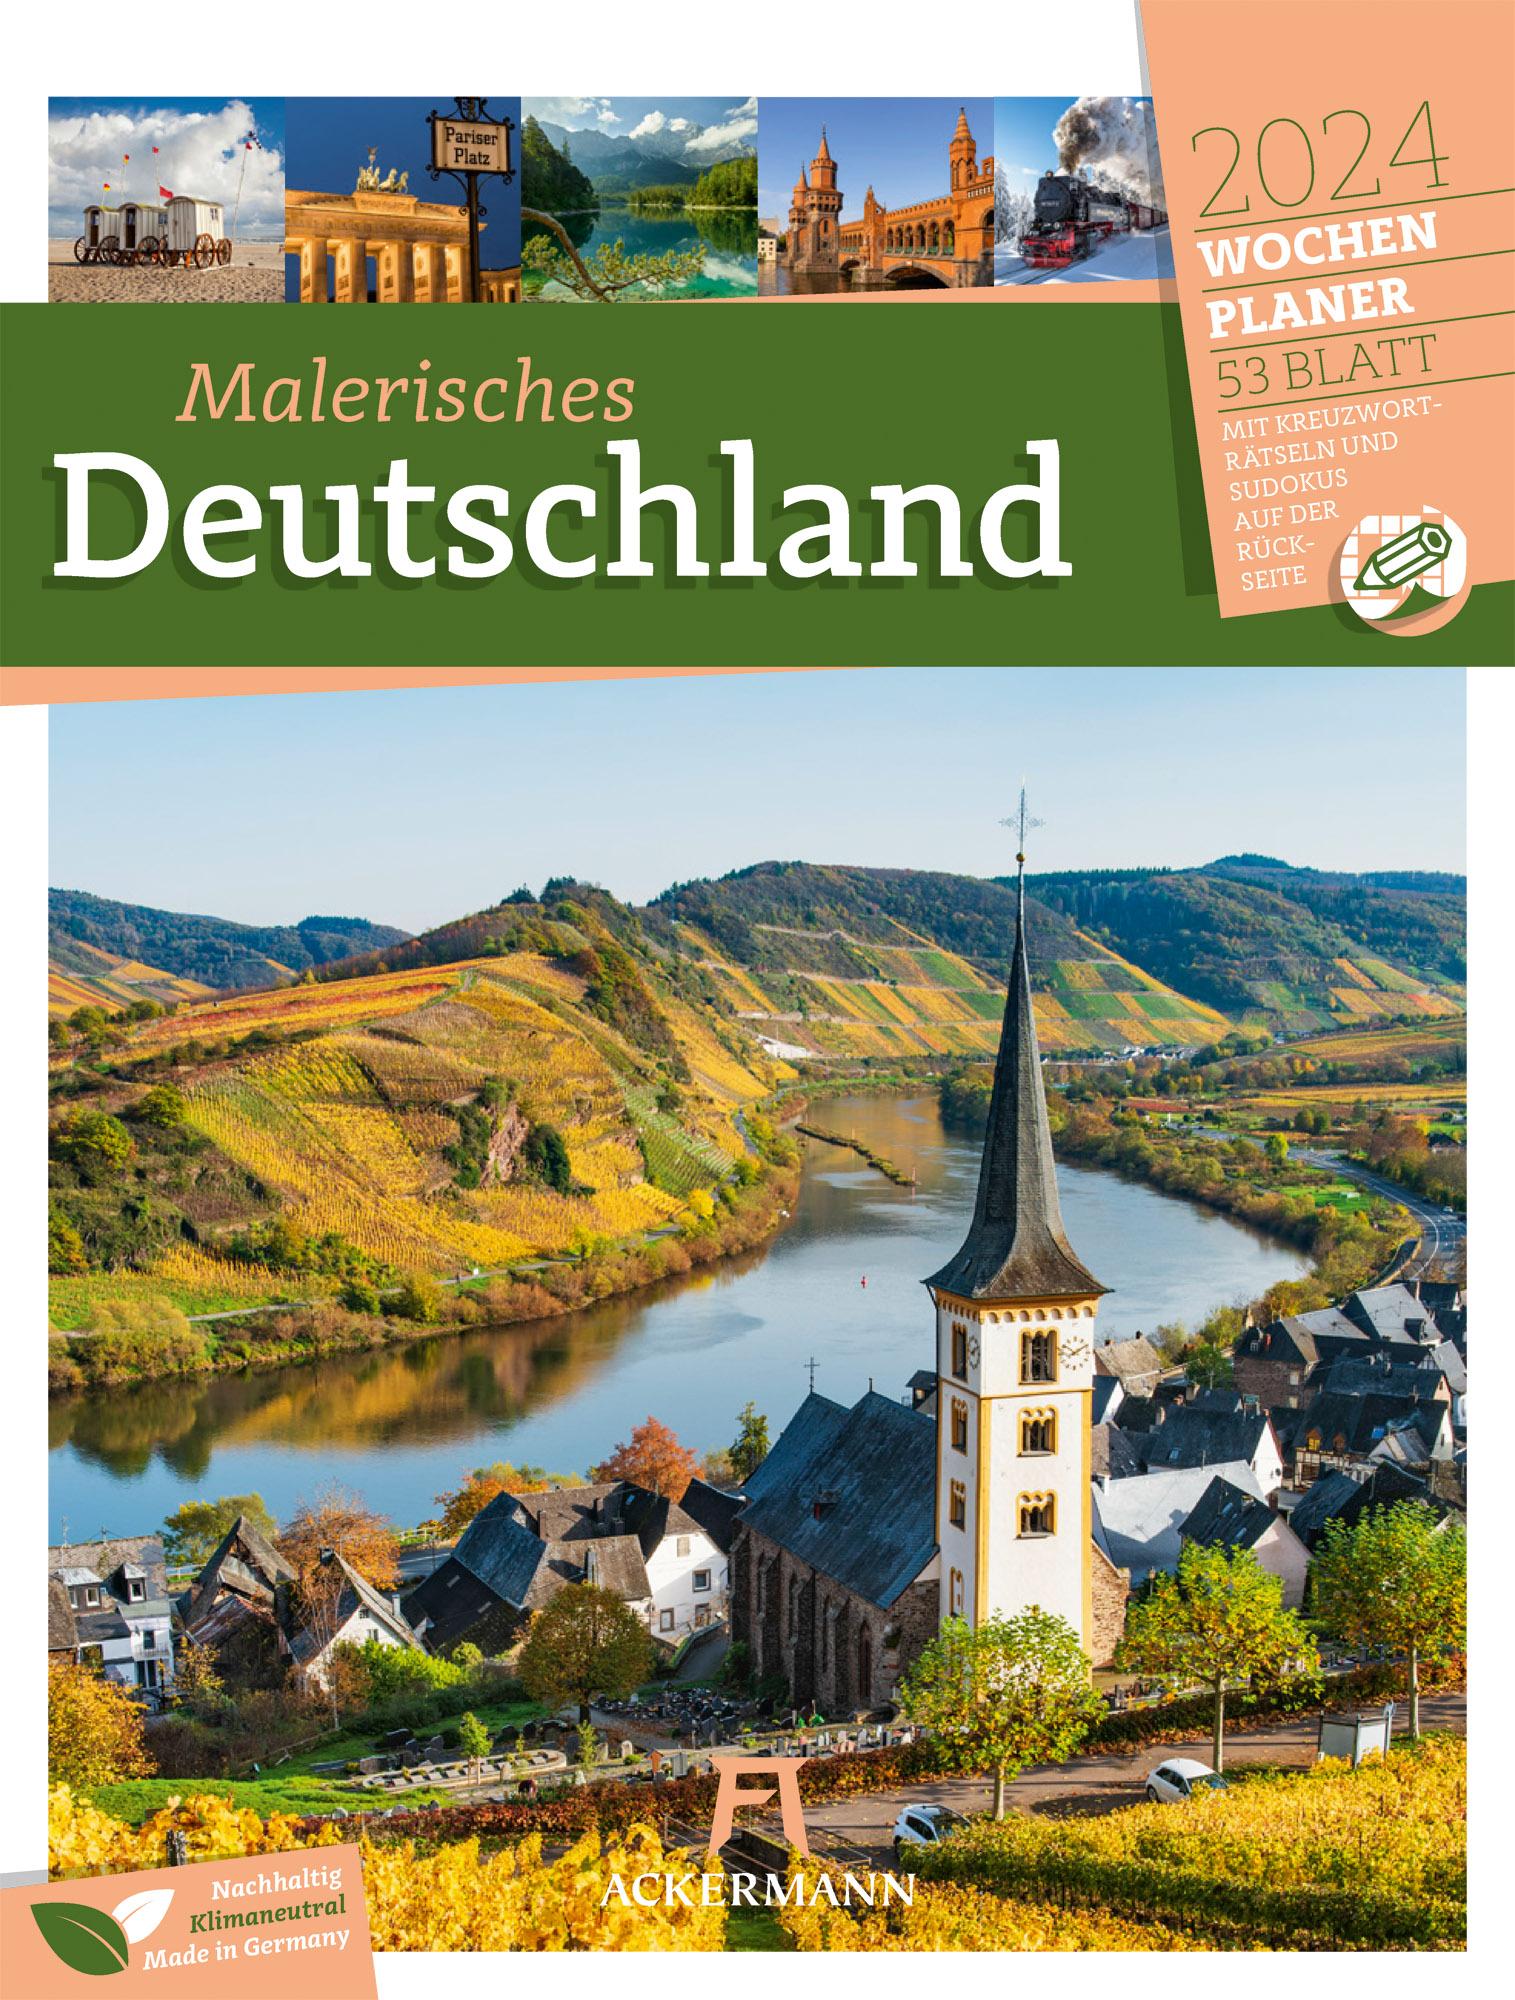 Malerisches Deutschland - Wochenplaner Kalender 2024 Maße (B/H): 25 x 33 cm